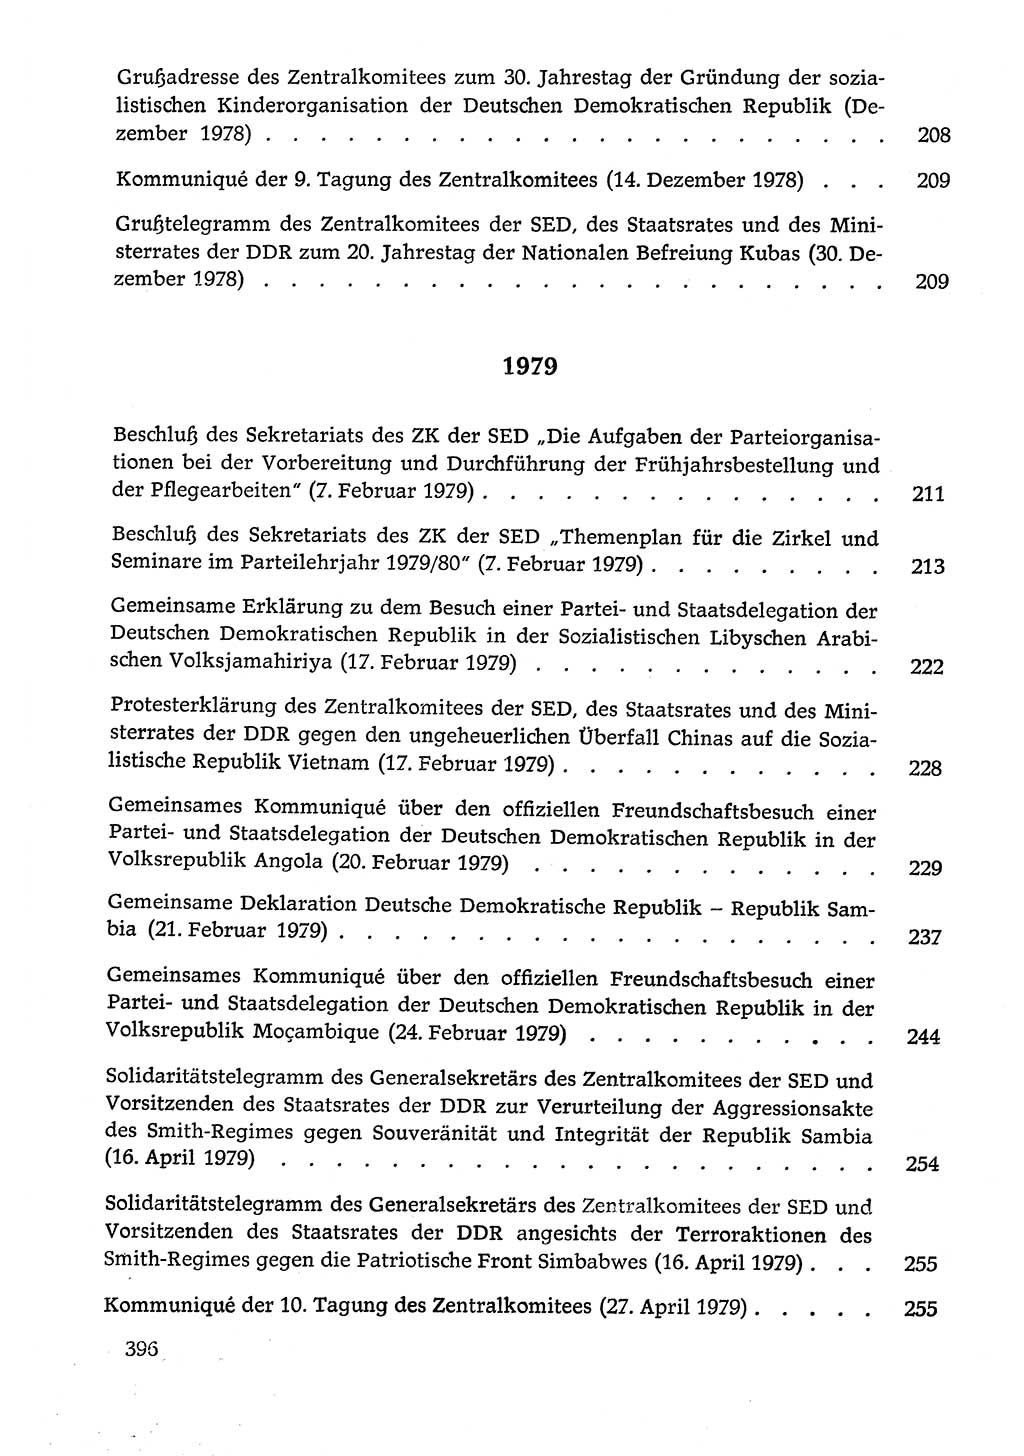 Dokumente der Sozialistischen Einheitspartei Deutschlands (SED) [Deutsche Demokratische Republik (DDR)] 1978-1979, Seite 396 (Dok. SED DDR 1978-1979, S. 396)